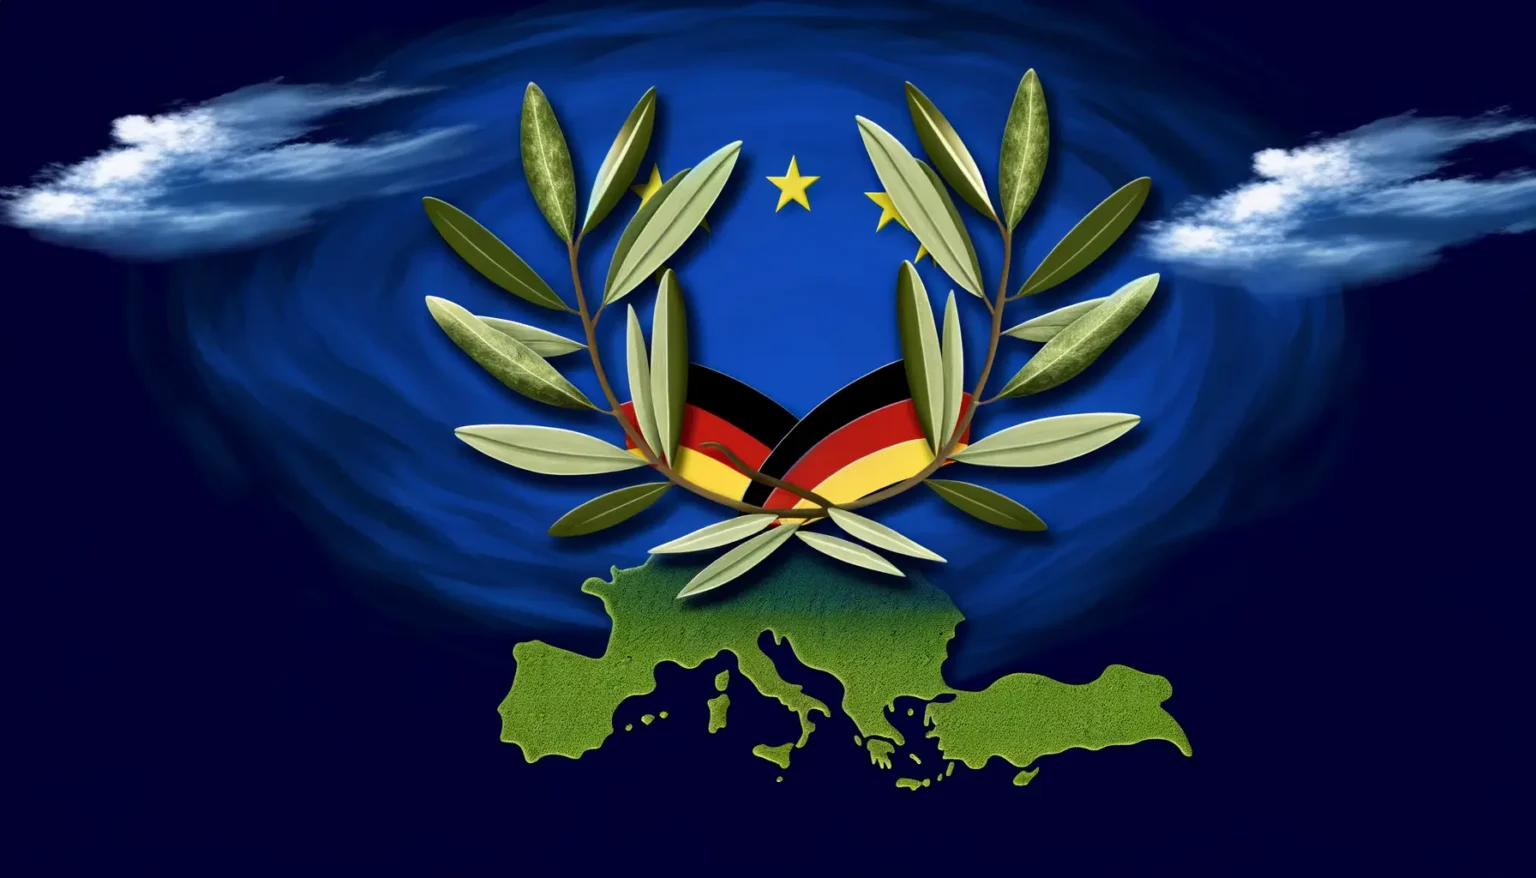 Digitale Abbildung mit einem stilisierten Olivenzweigkranz um ein zentriertes Emblem, das die deutschen Nationalfarben schwarz, rot und gold zeigt, vor einem dunkelblauen Hintergrund mit Wirbeleffekten und zwei weißen Wolken. Unten ist die grüne Kontur Europas zu erkennen.